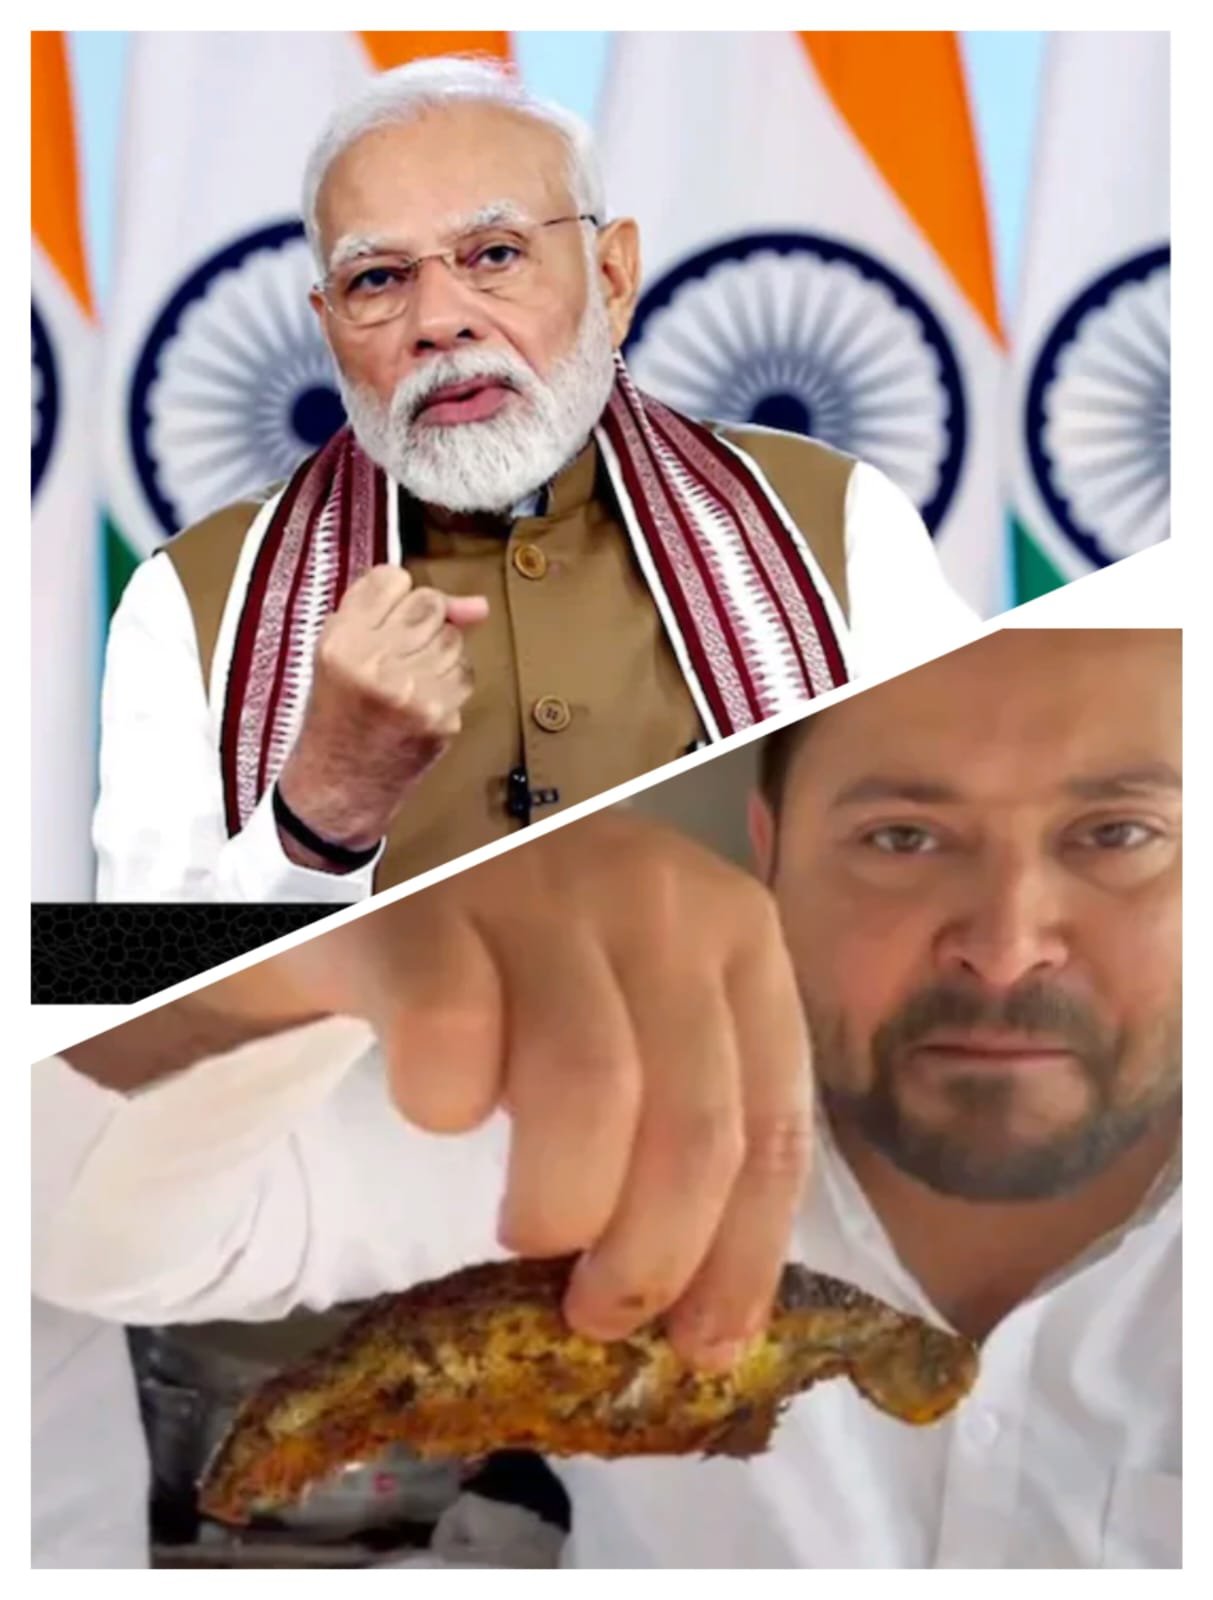 सावन-नवरात्र में मटन का वीडियो डालकर चिढ़ाते हैं ..बोले-PM ..राहुल ने लालू से सीखा था मटन बनाना, तेजस्वी ने मछली खाते शेयर किया था वीडियो